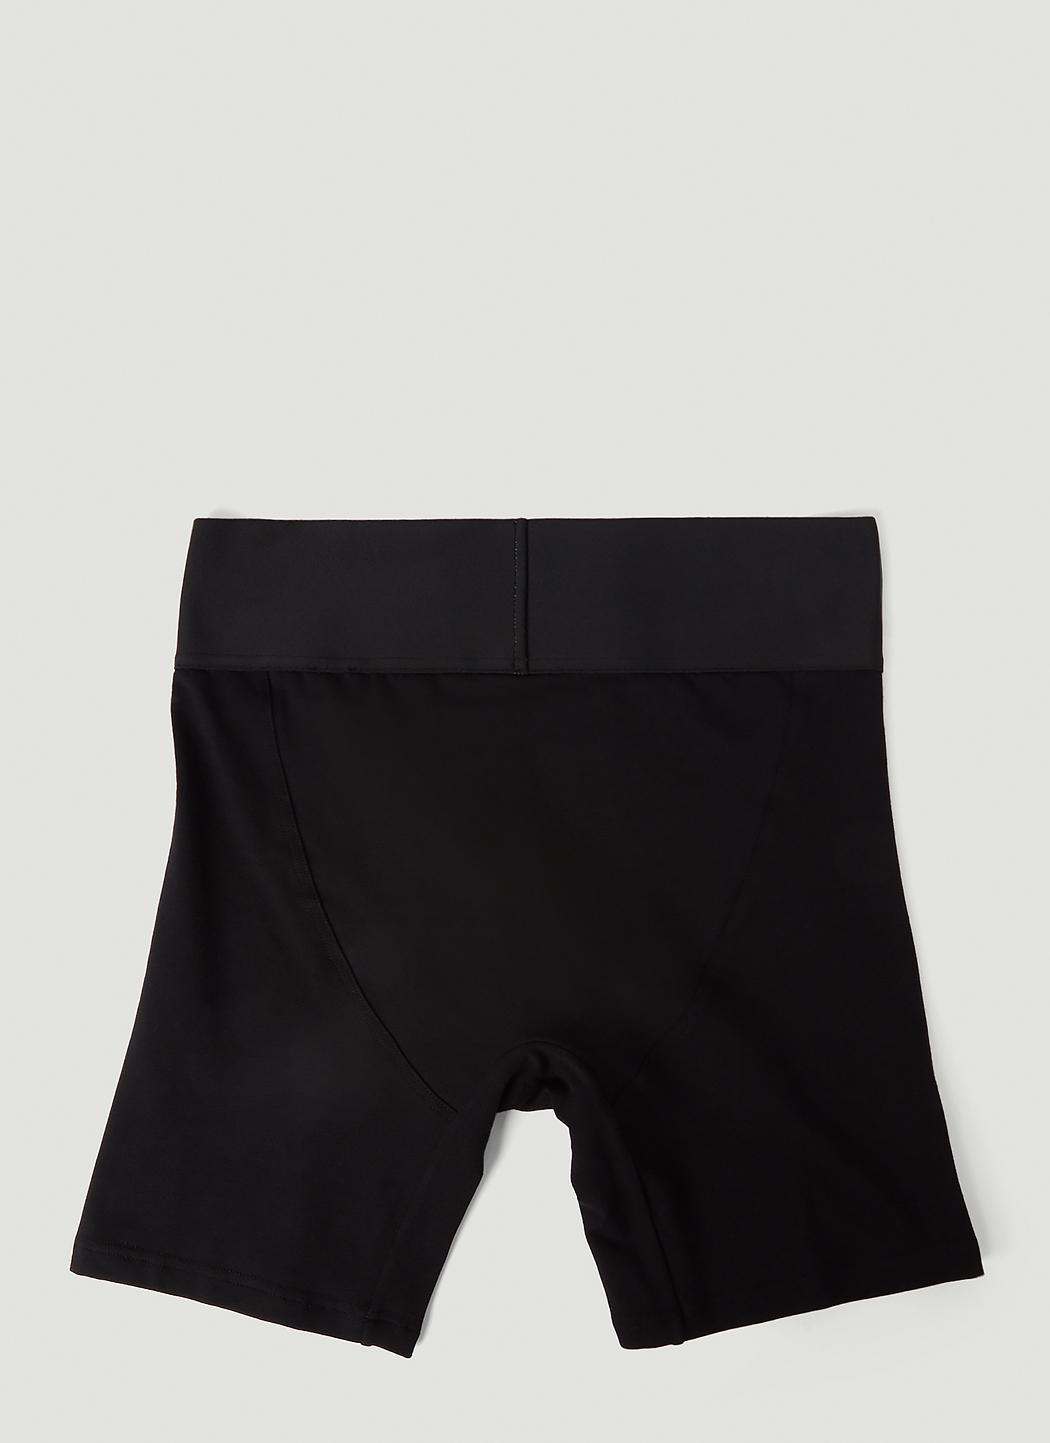 logo-waistband boxer shorts, Balenciaga